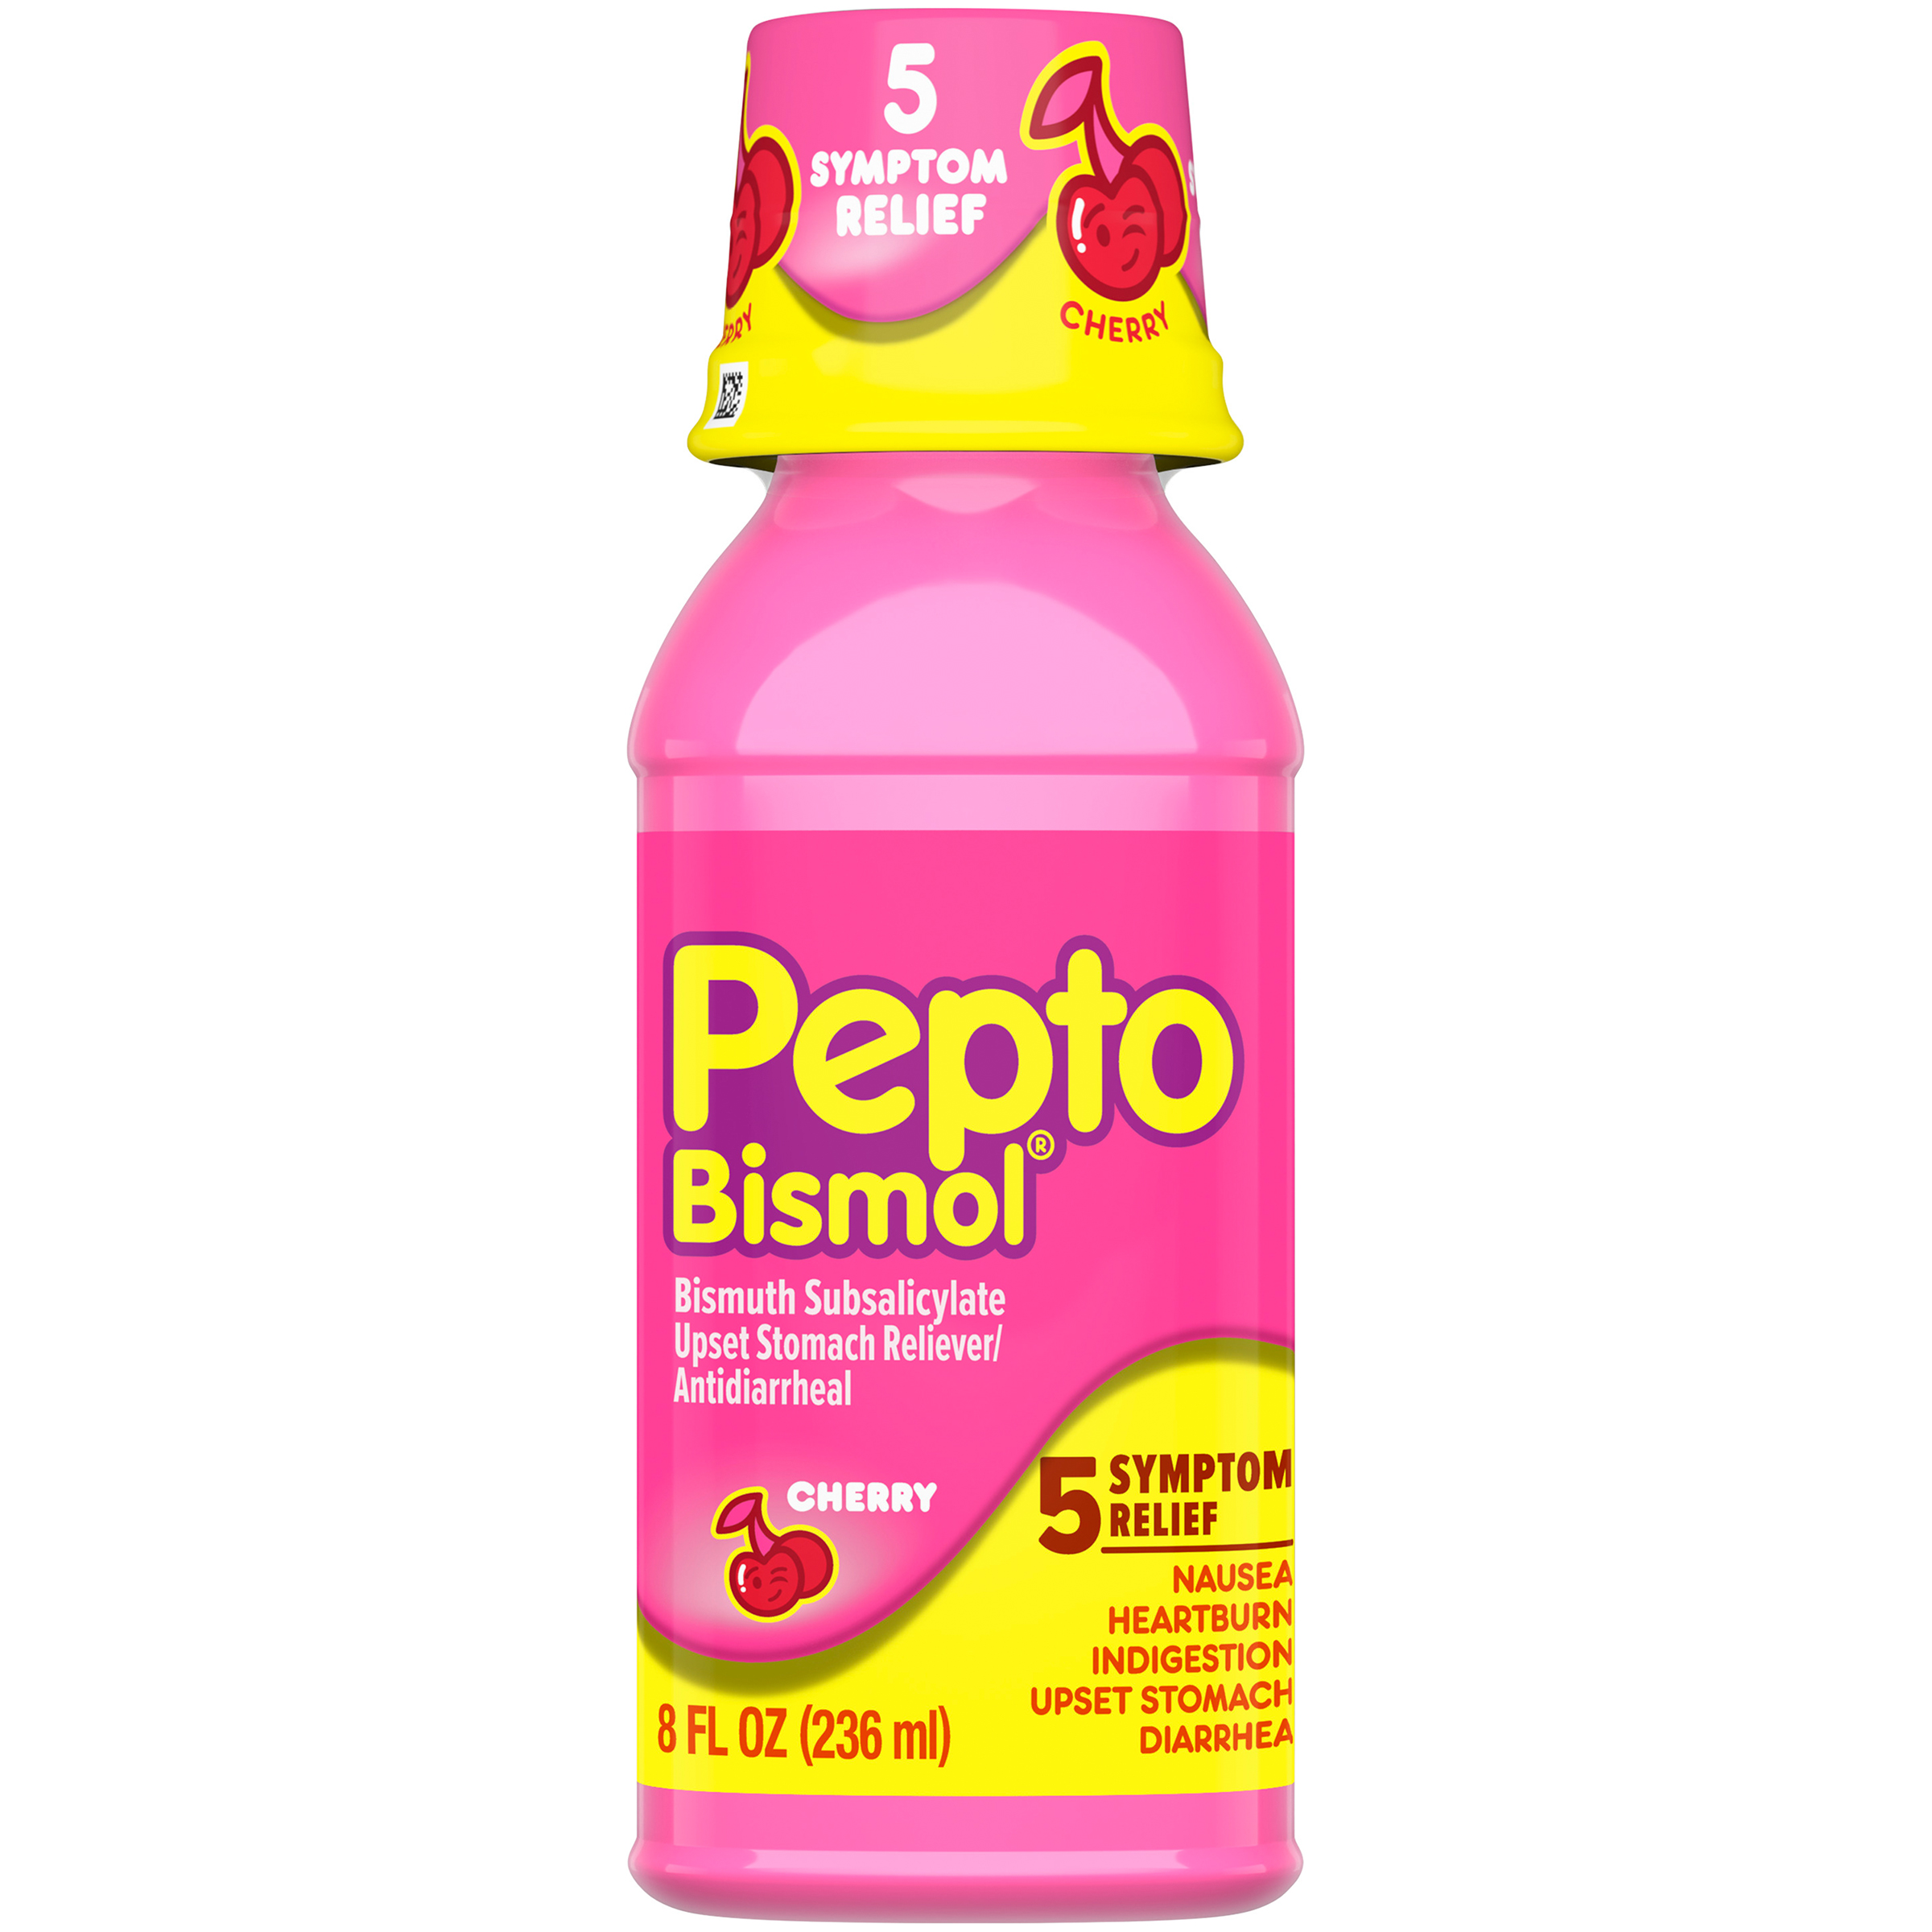 PEPTO-BISMOL Upset Stomach Reliever/Antidiarrheal, Cherry, 8 fl oz (236 ml)...